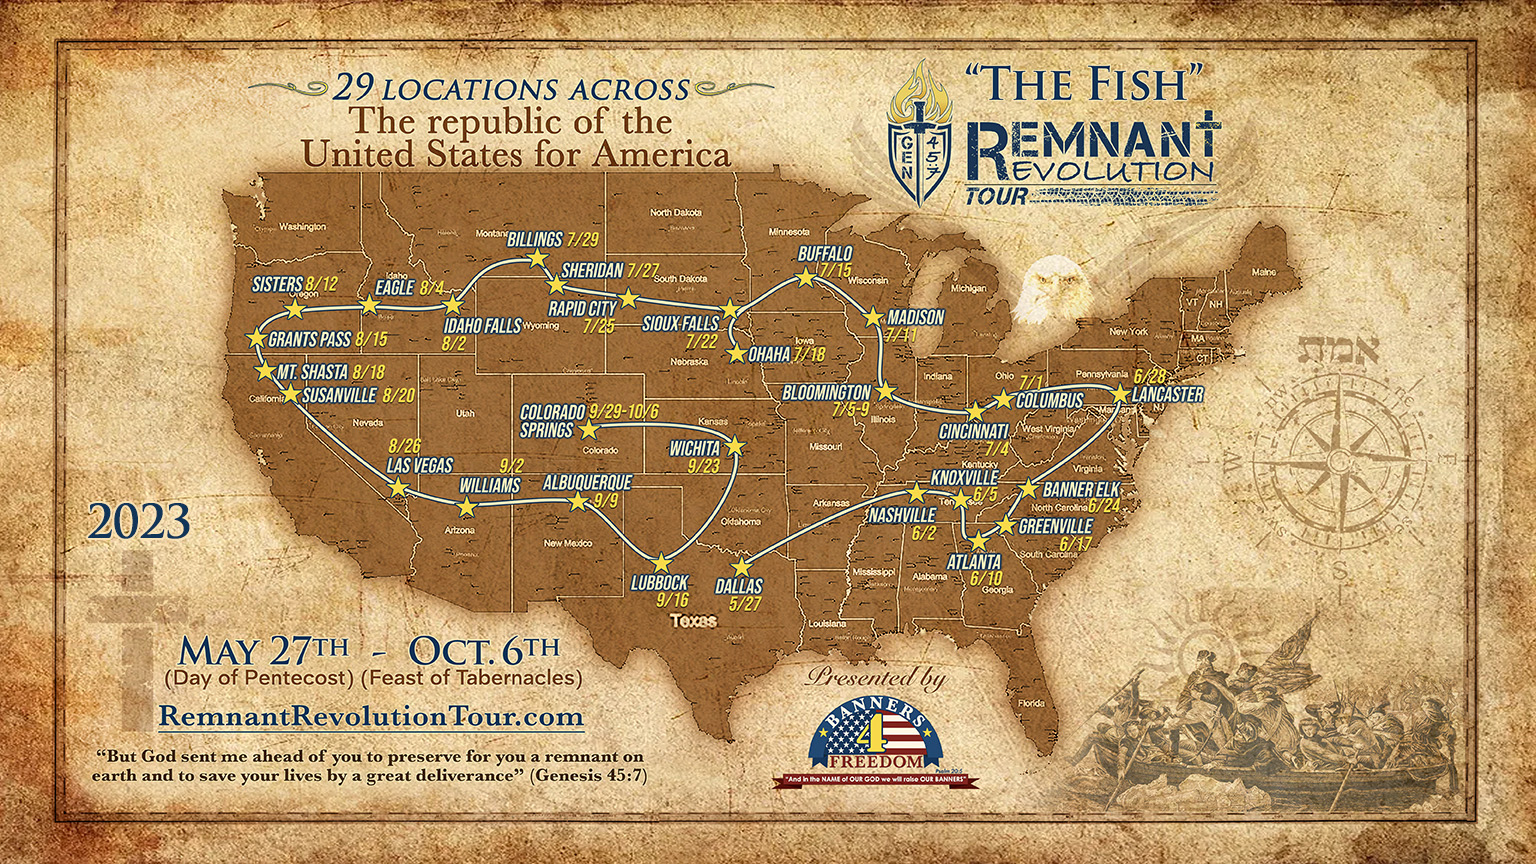 Remnant Revolution Tour Map